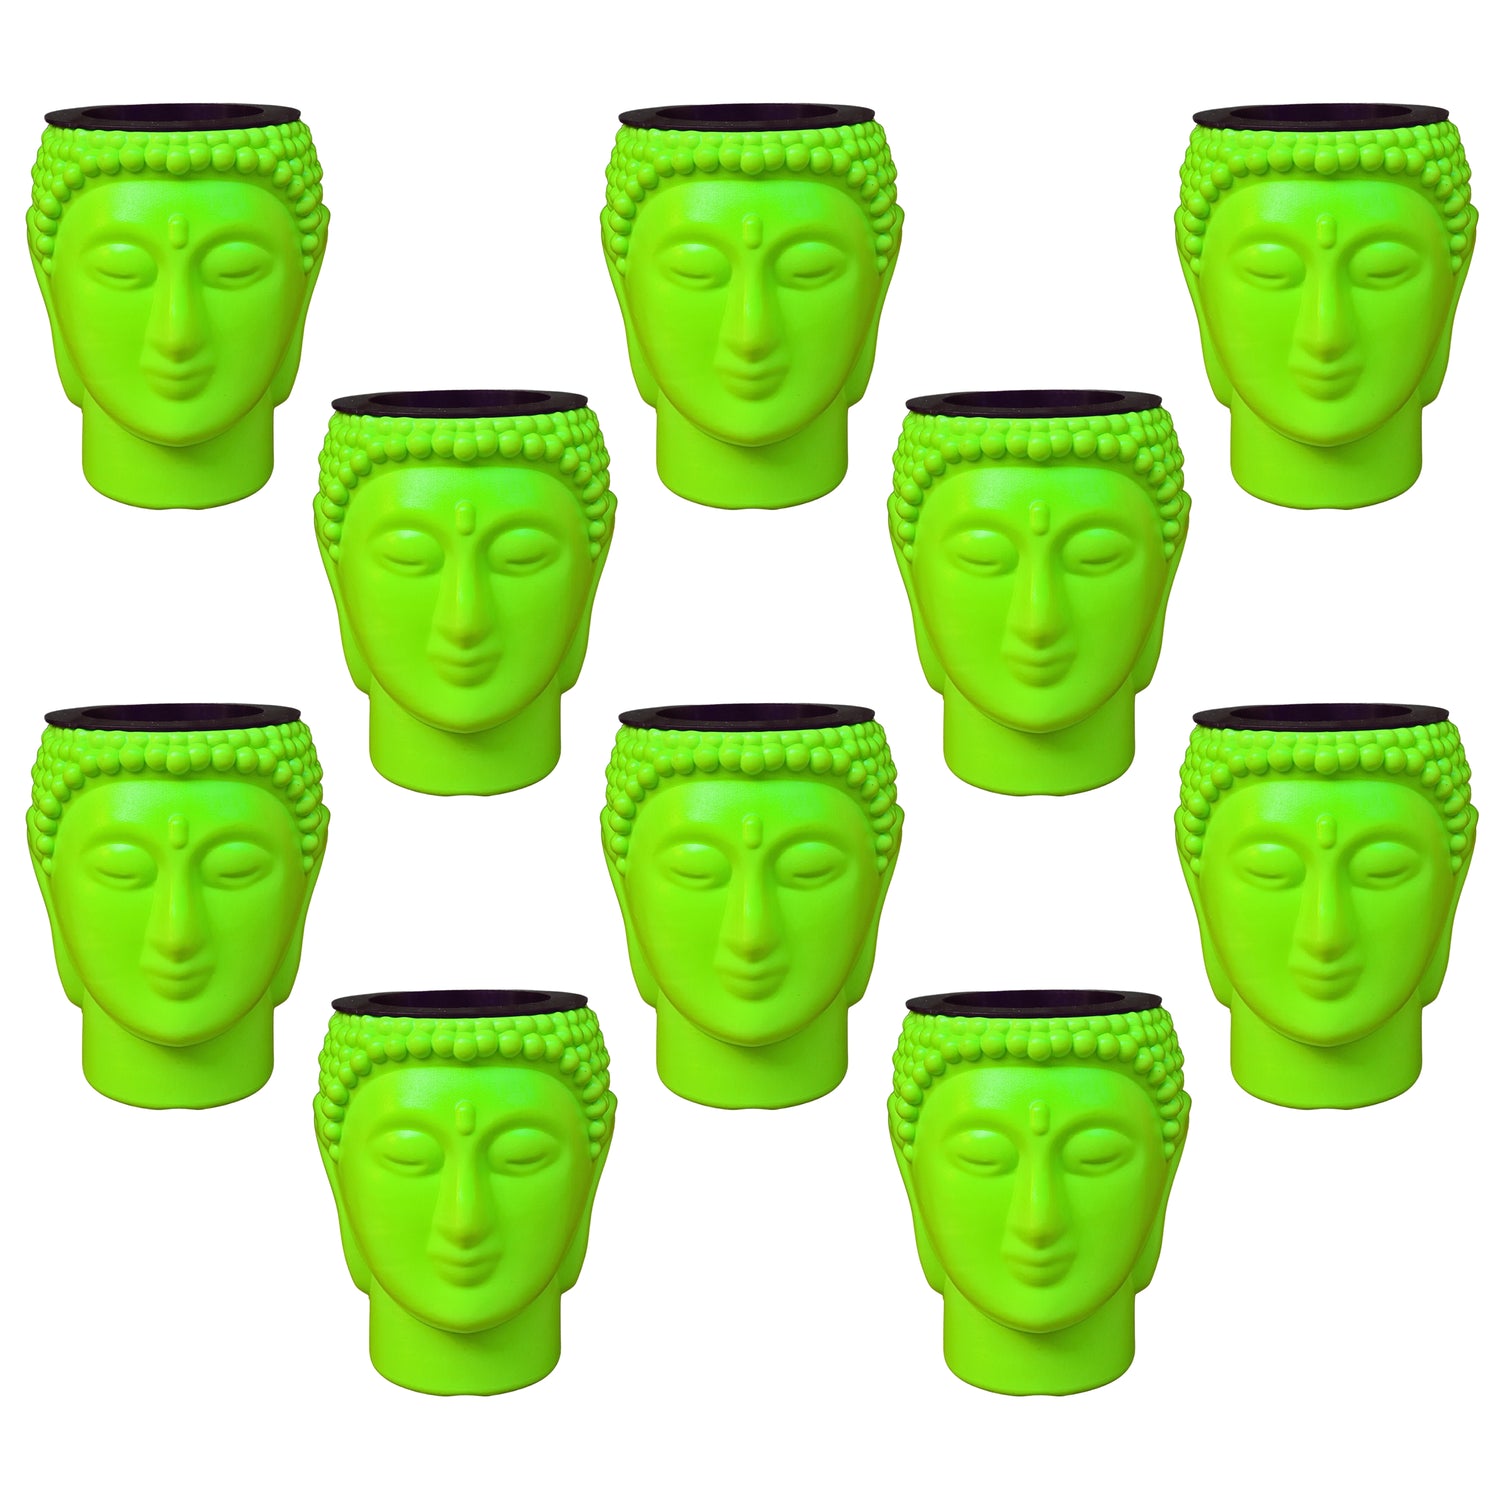 Buddha Pot / Planter - Green Colour